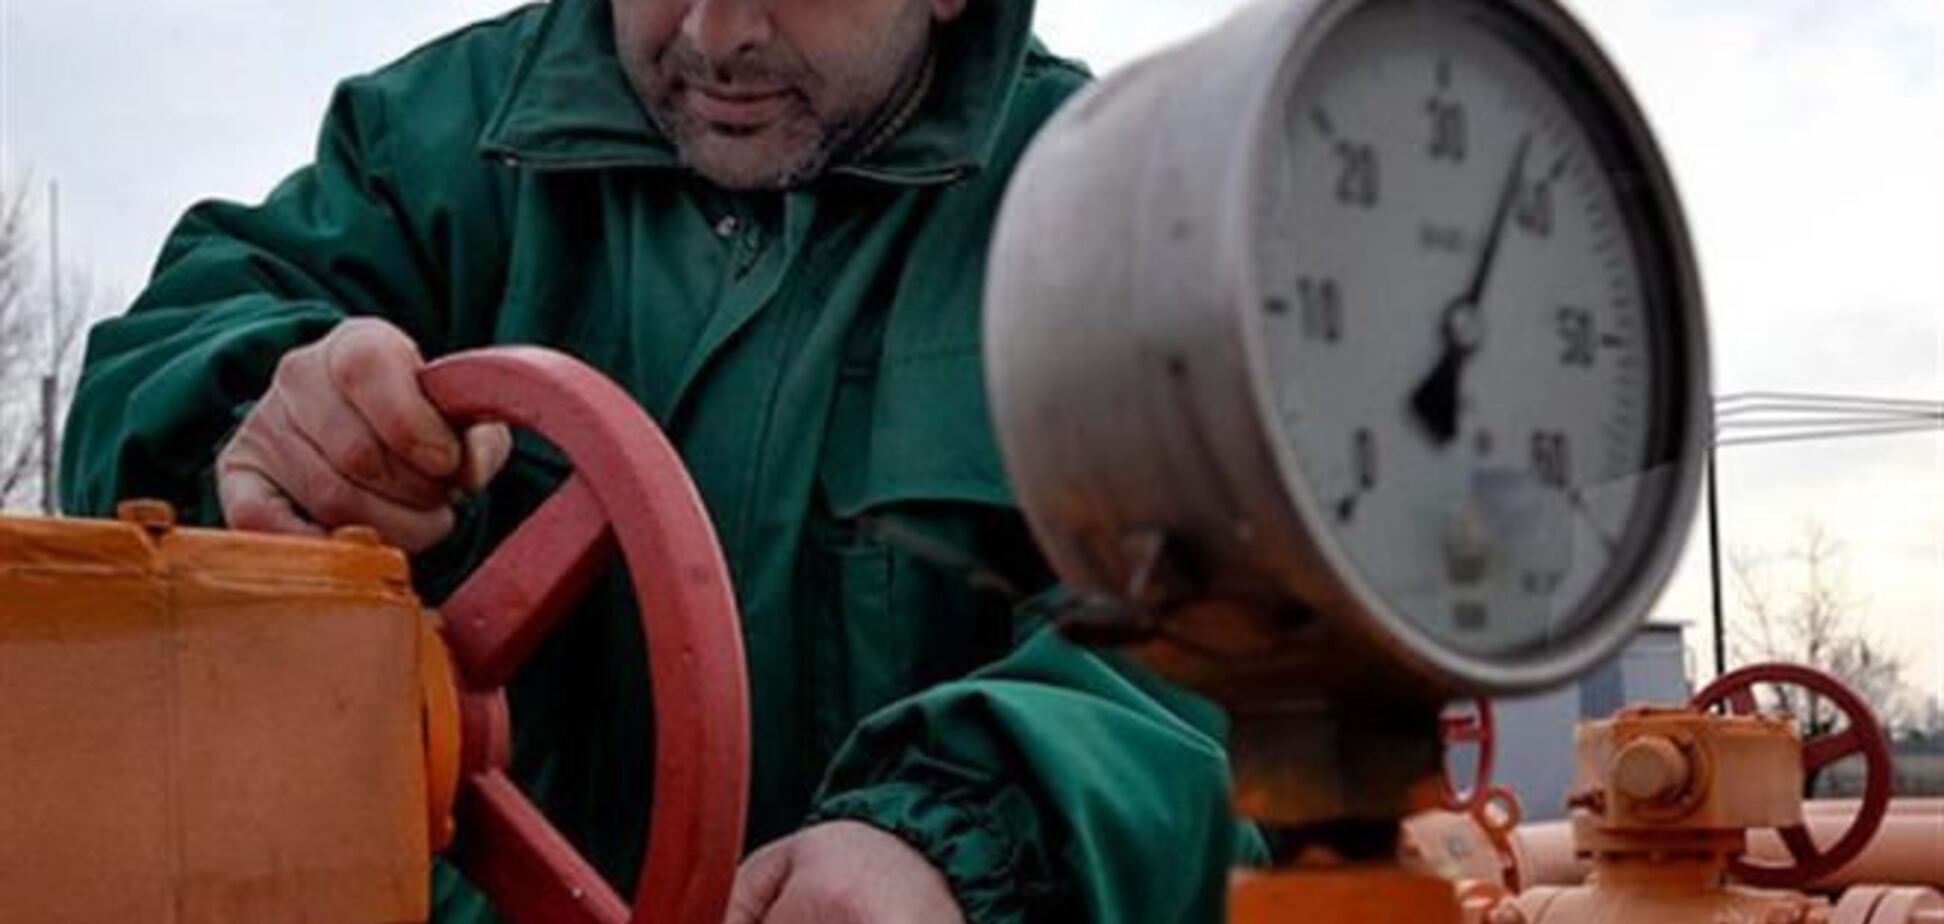 ПР: Украина будет закупать у России лишь необходимый объем газа